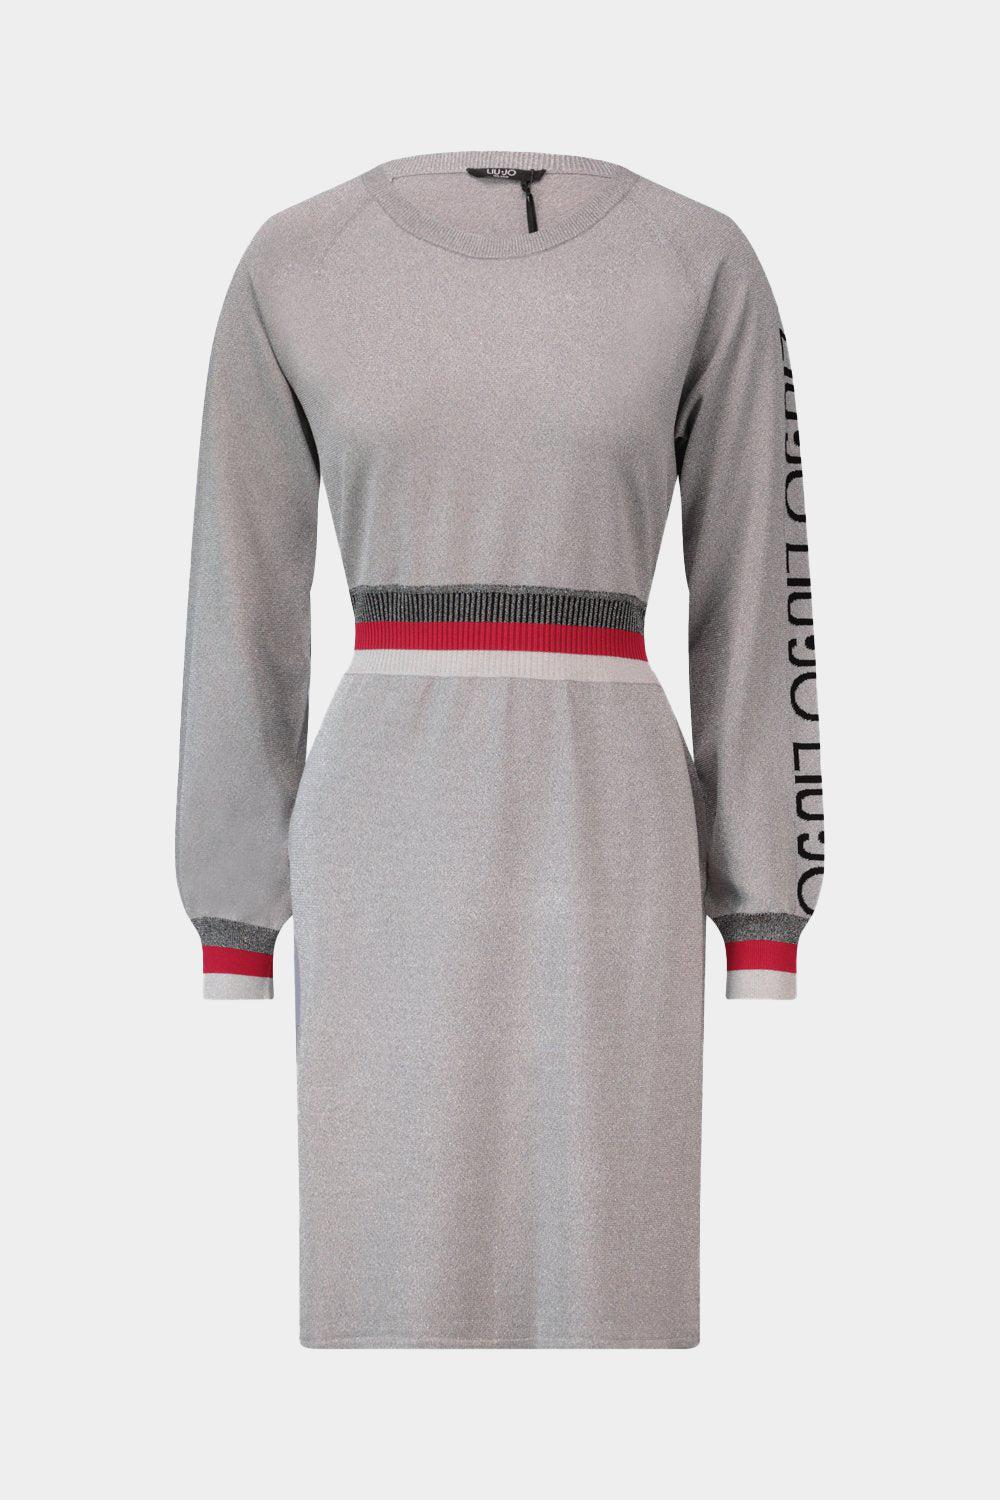 שמלת סריג לורקס לנשים שרוול לוגו LIU JO Vendome online | ונדום .